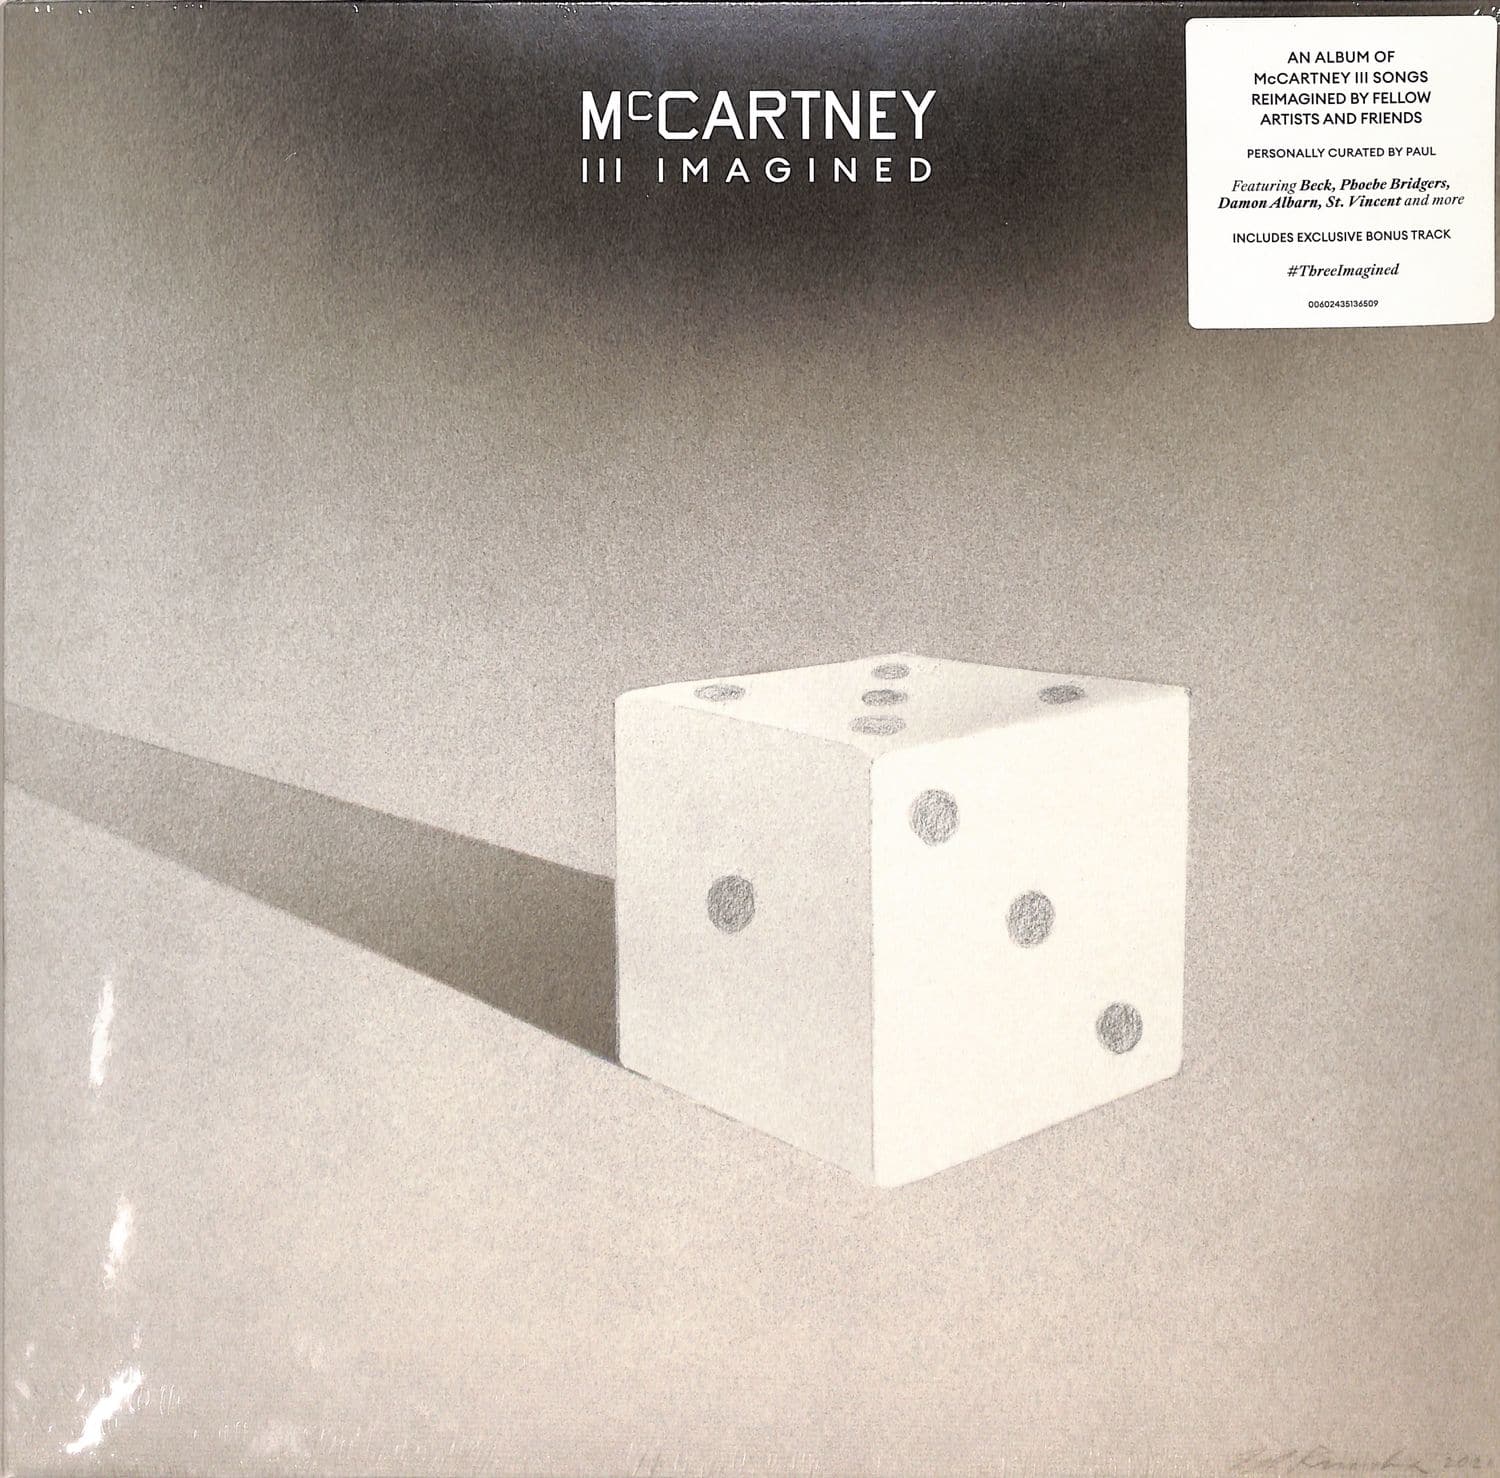 Paul McCartney - MCCARTNEY III IMAGINED 